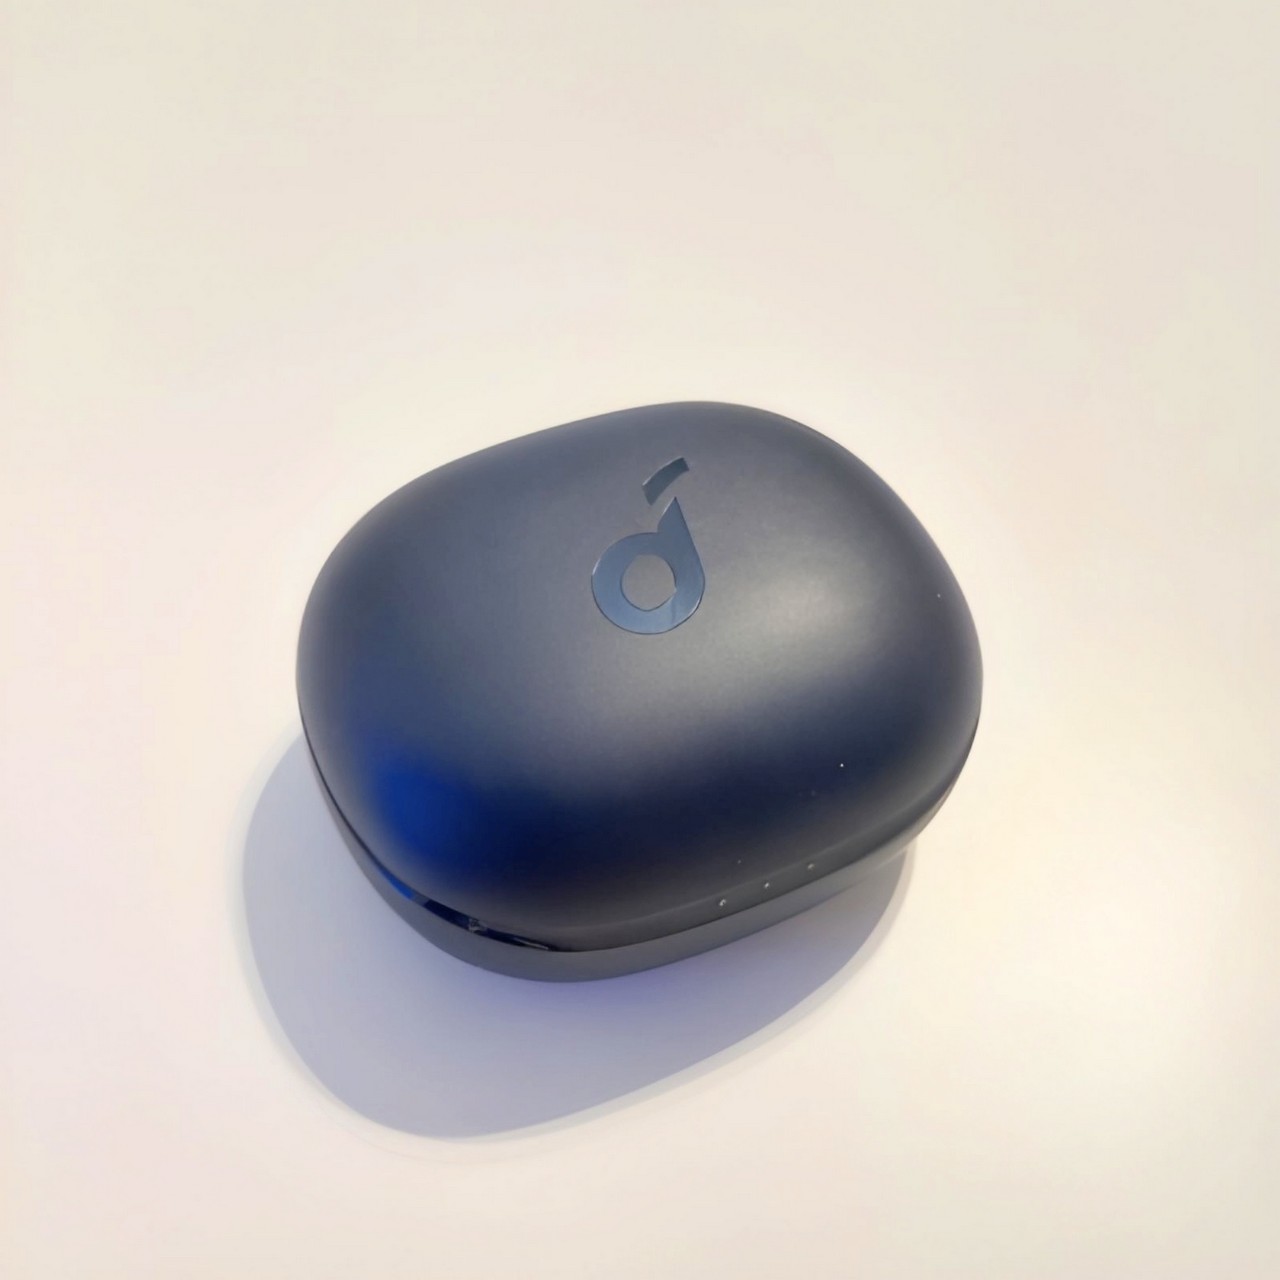 Качественные Bluetooth-наушники Anker